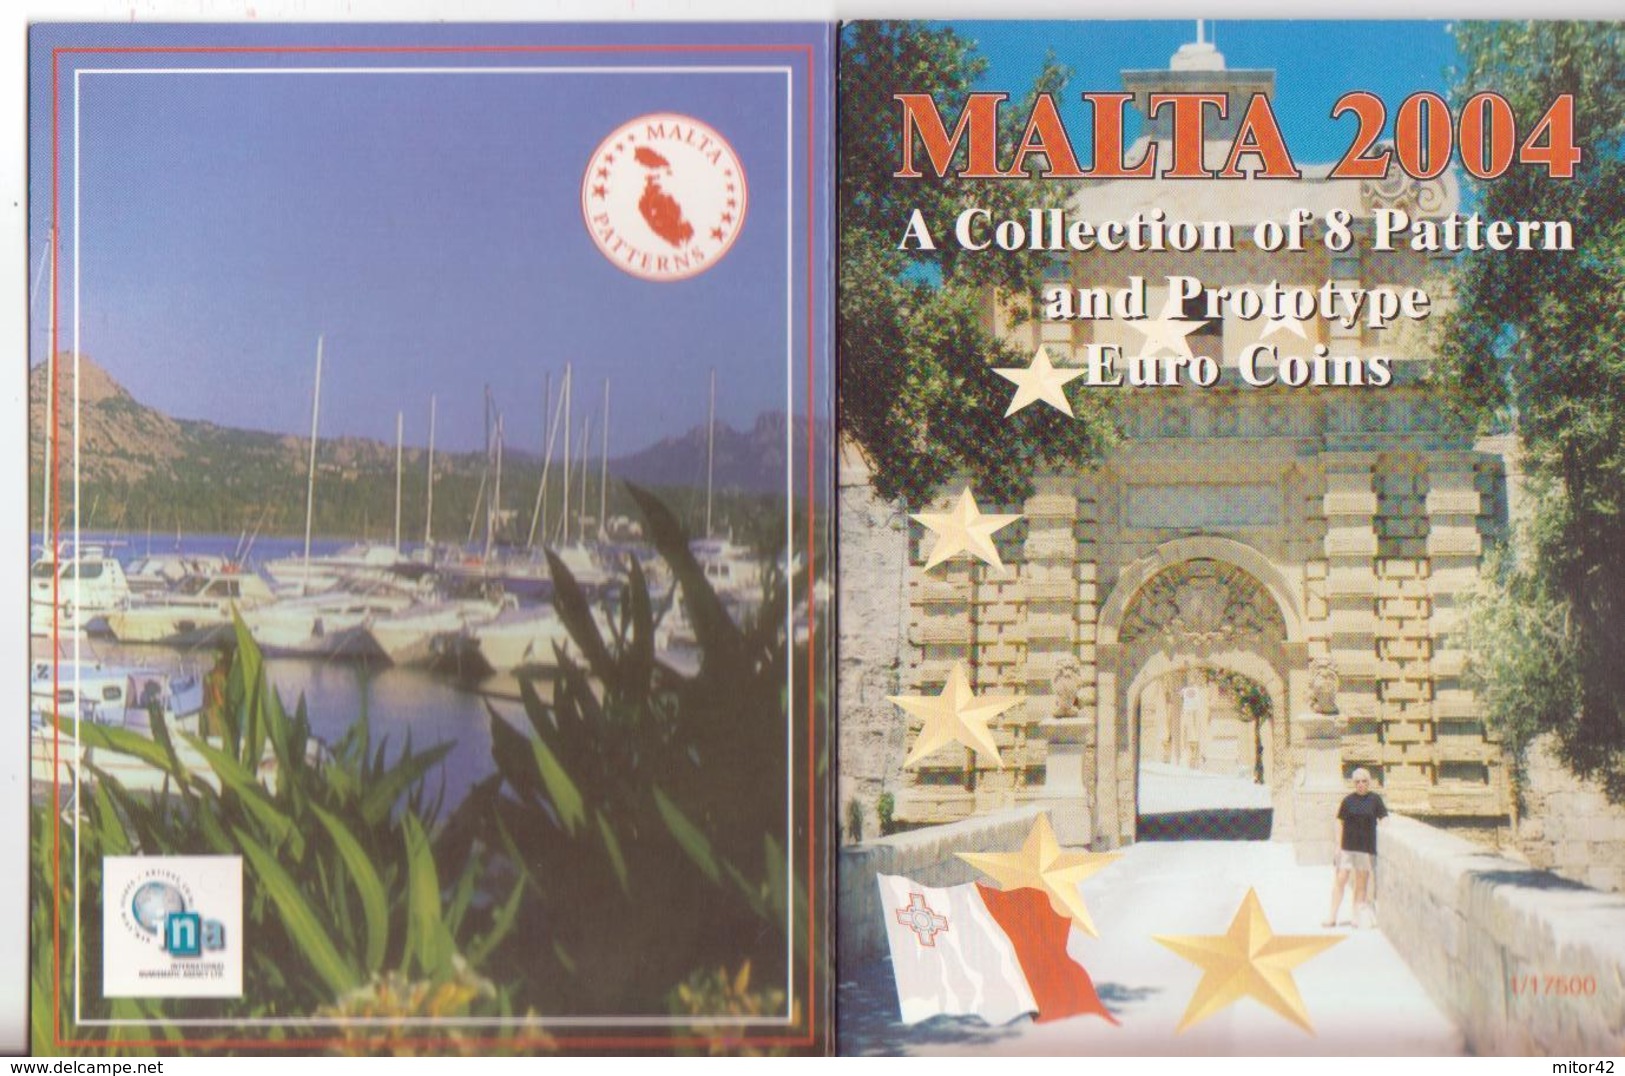 Malta-Malte-2004-Prova Euro-Divisionale 8 Valori-Try Euro-Test Euro - Privatentwürfe